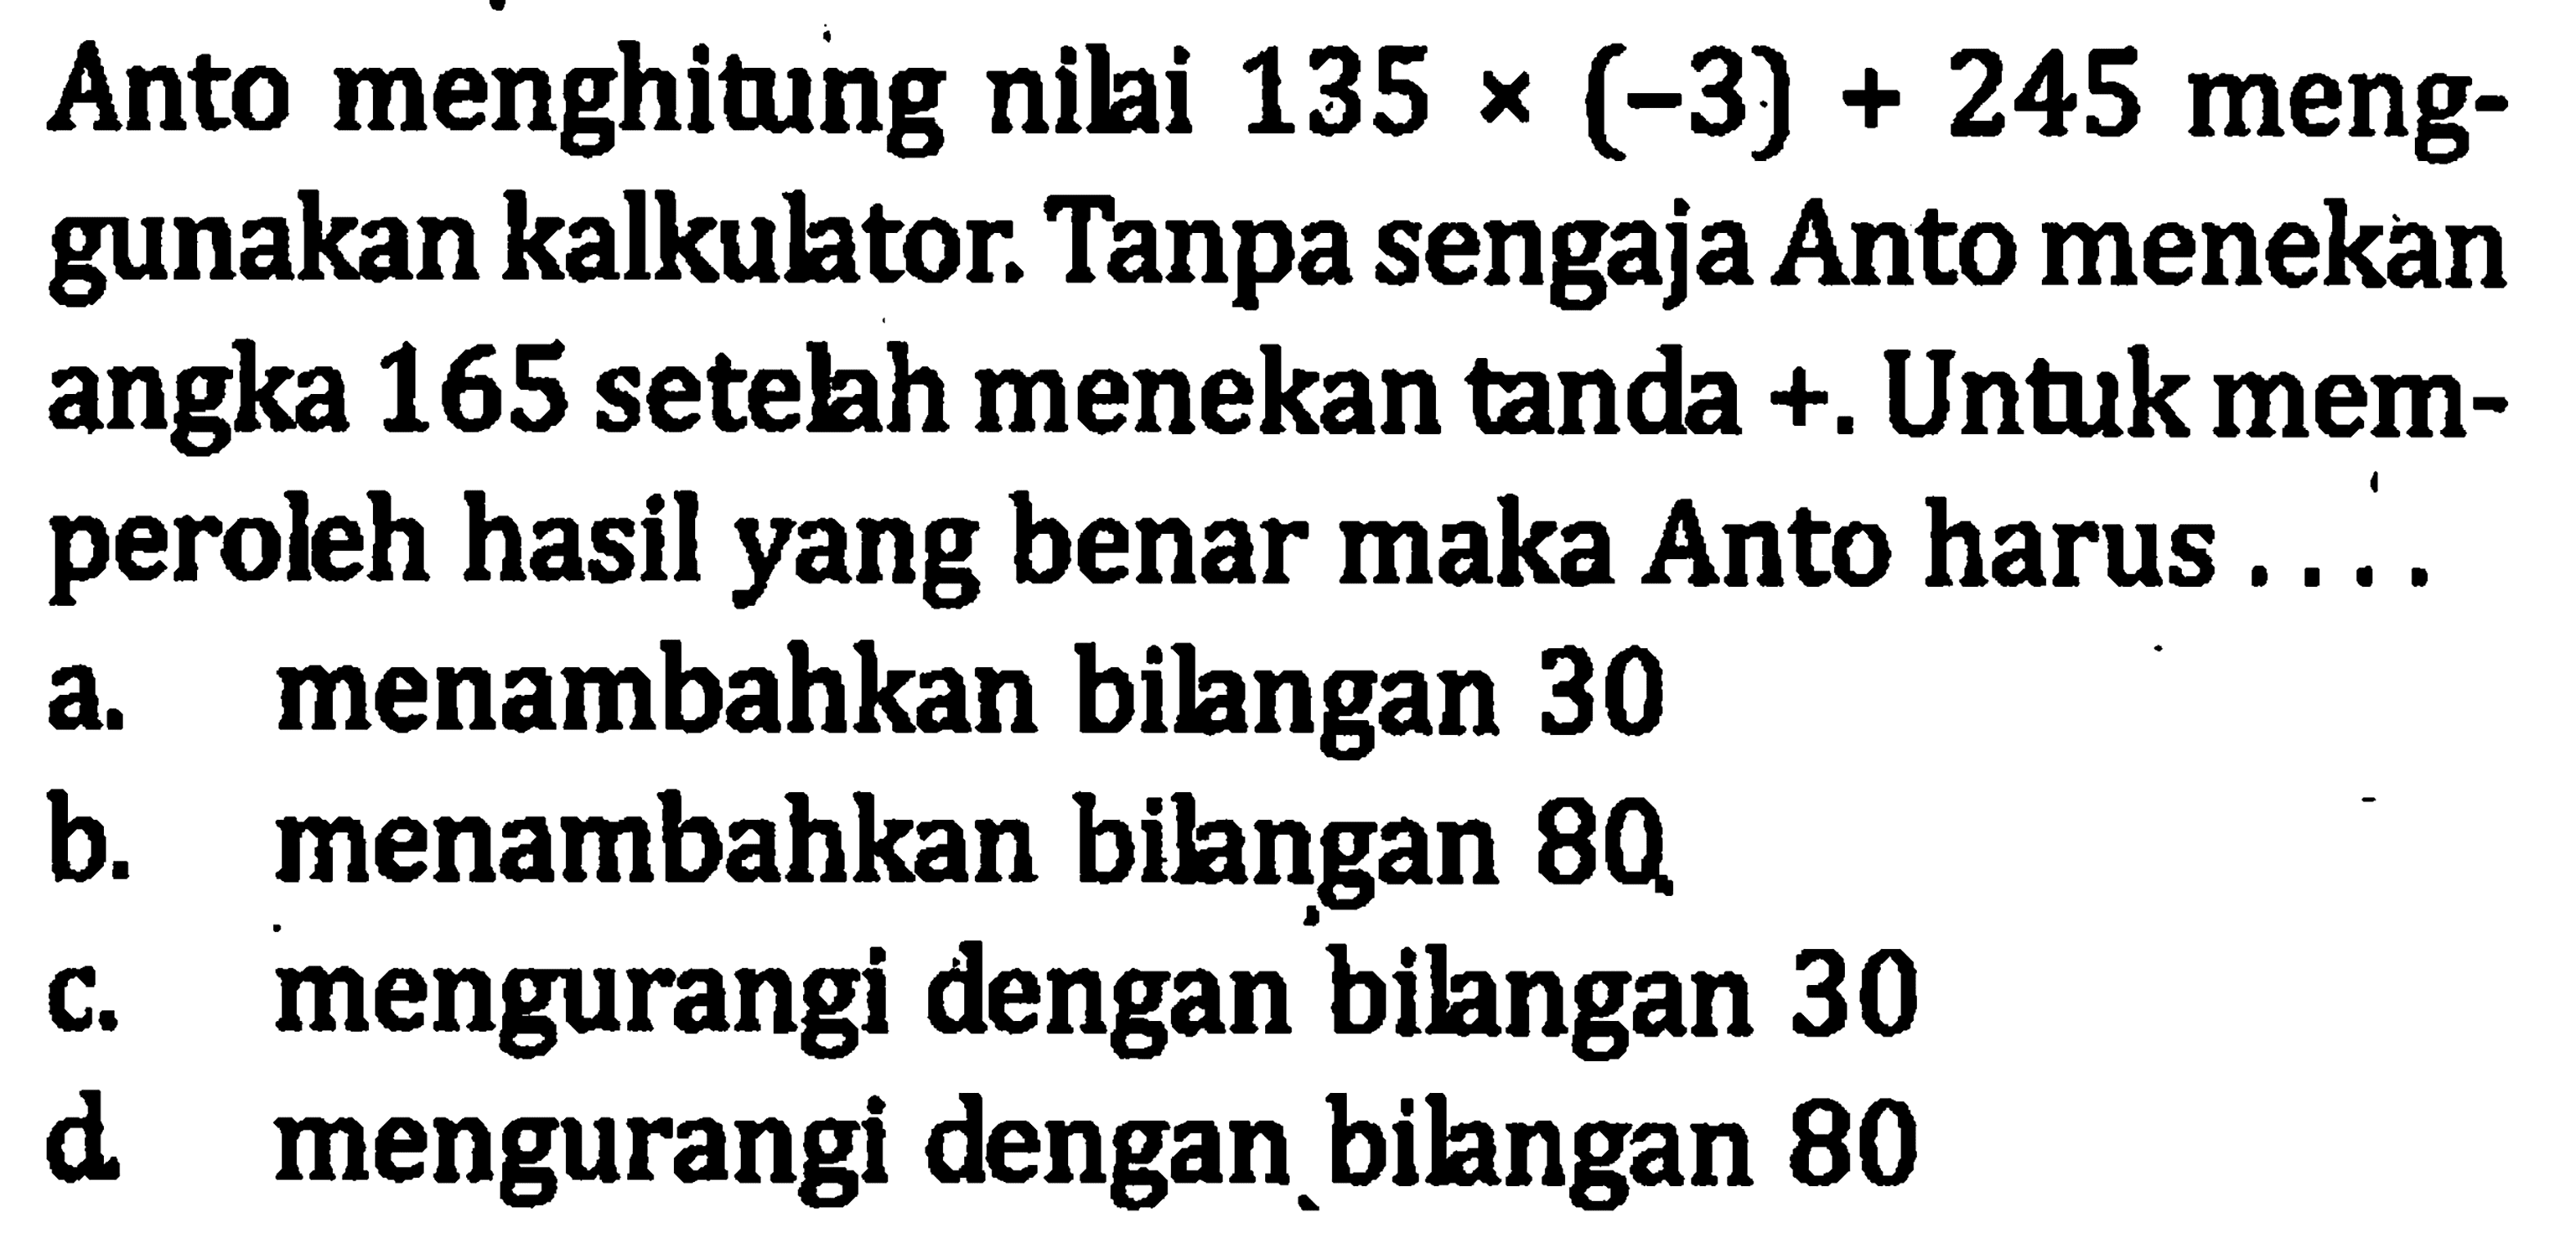 Anto menghitung nilai 135 x(-3) + 245 meng-gunakan kalkulator. Tanpa sengaja Anto menekan angka 165 setelah menekan tanda +. Untuk mem- peroleh hasil yang benar maka Anto harus